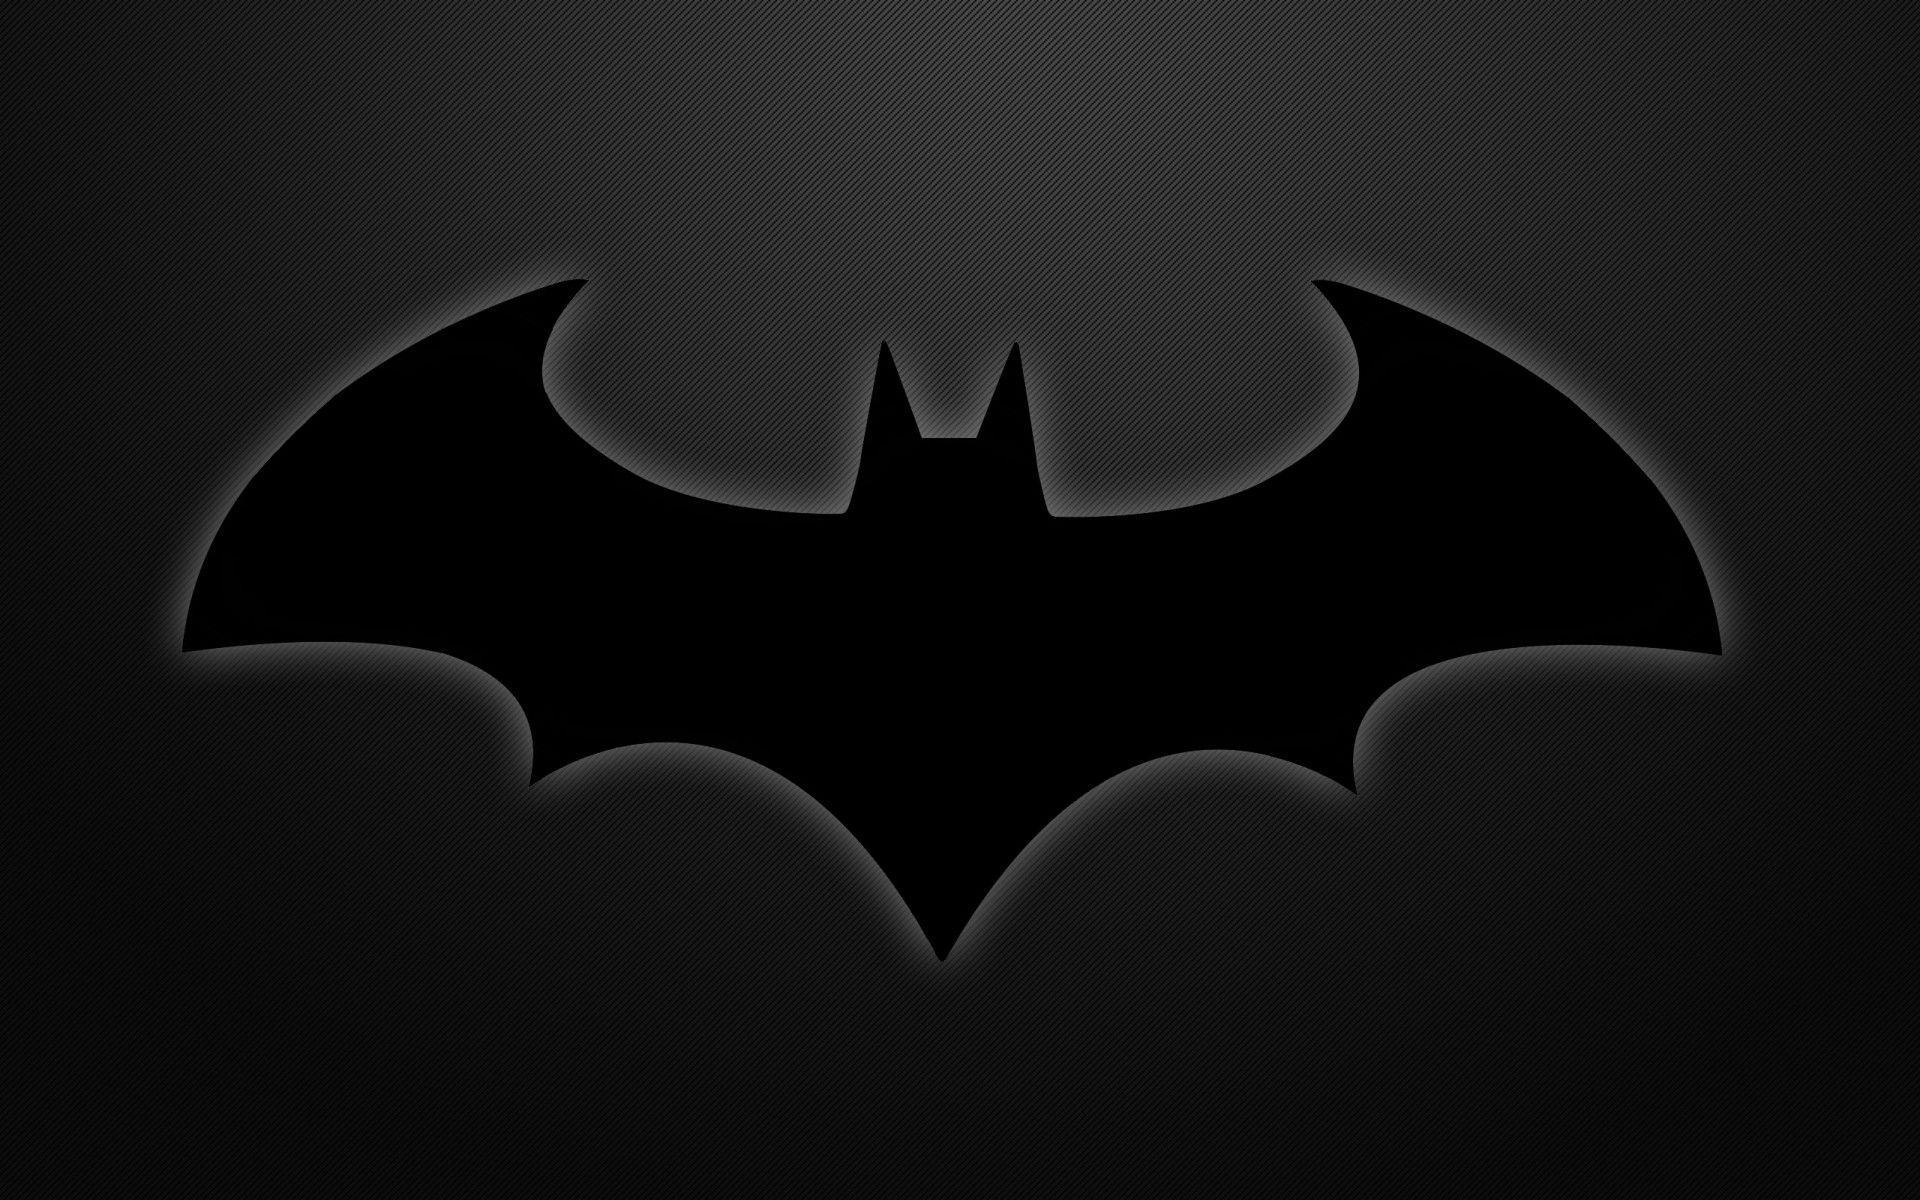 배트맨 바탕 화면,배트맨,소설 속의 인물,사법 리그,검정색과 흰색,어둠